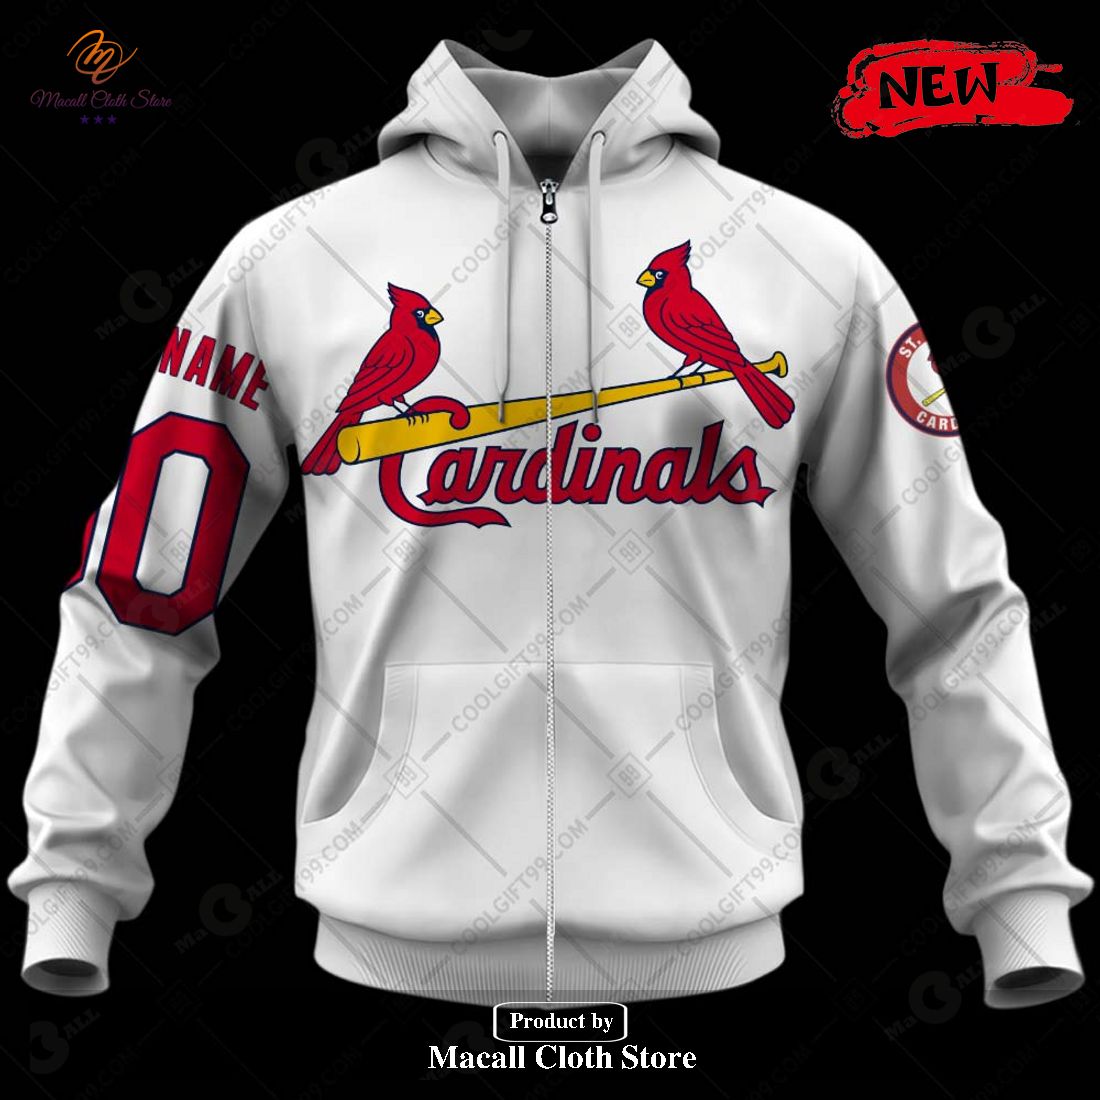 Customize Your St. Louis Cardinals Goku Jersey! - Pullama